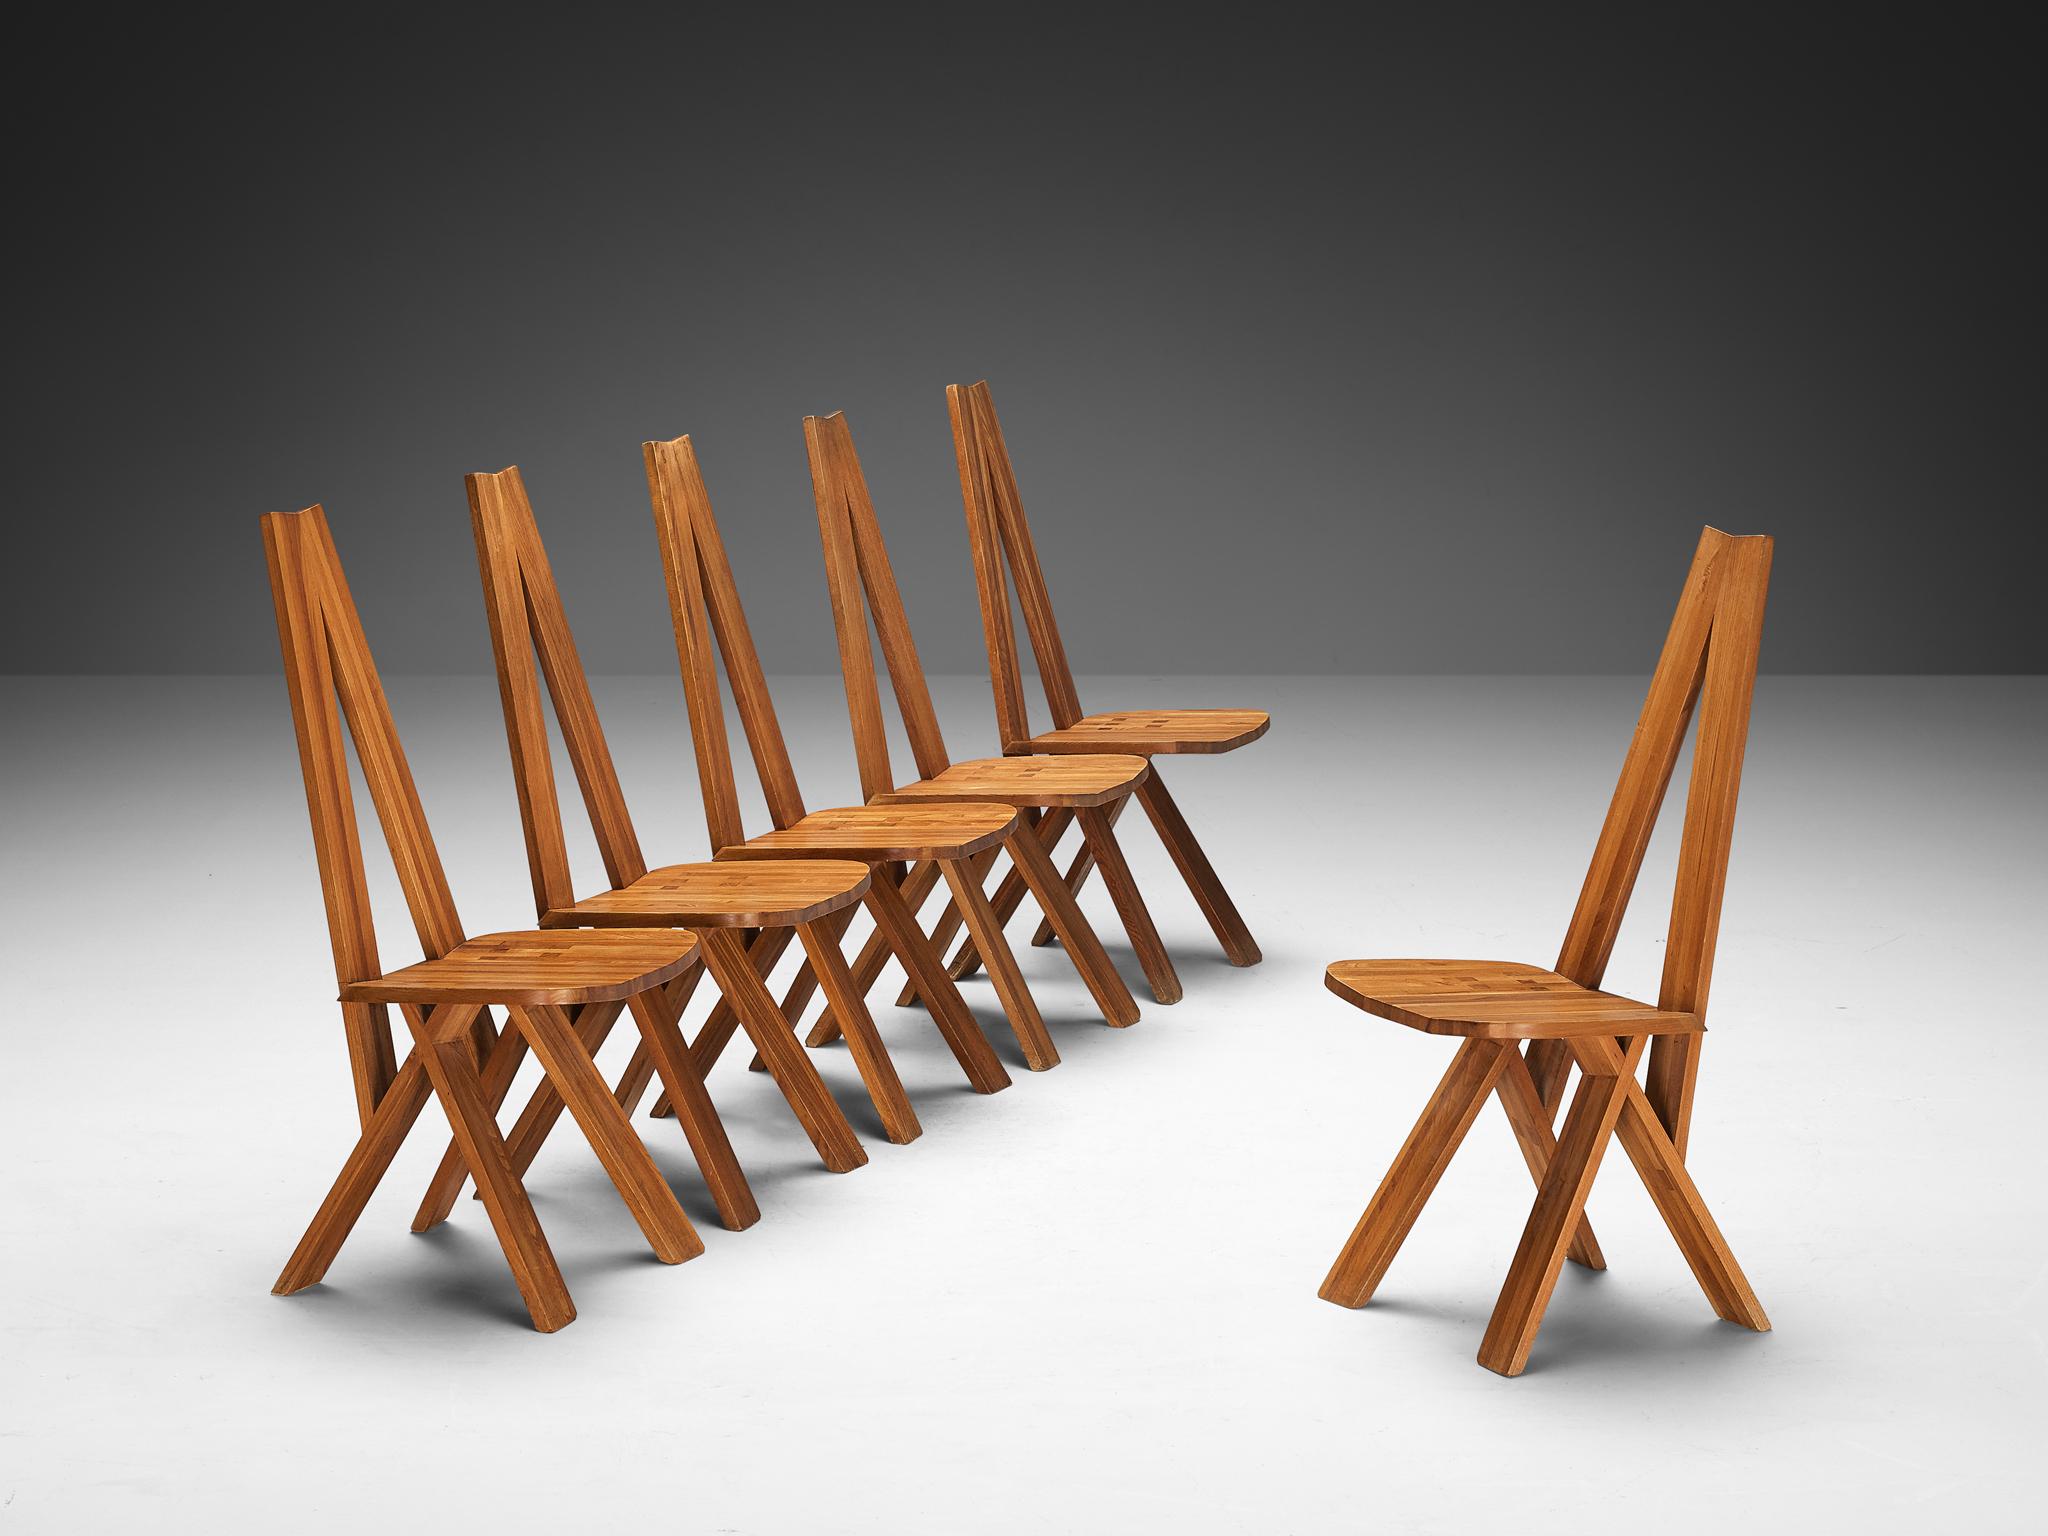 Pierre Chapo, ensemble de six chaises 'S45' ou 'Chlacc', orme, France, design 1979

Cette chaise de salle à manger 'S45', également connue sous le nom de chaise 'Chlacc', a été conçue par Pierre Chapo. Ces chaises sont réalisées en bois d'orme. La